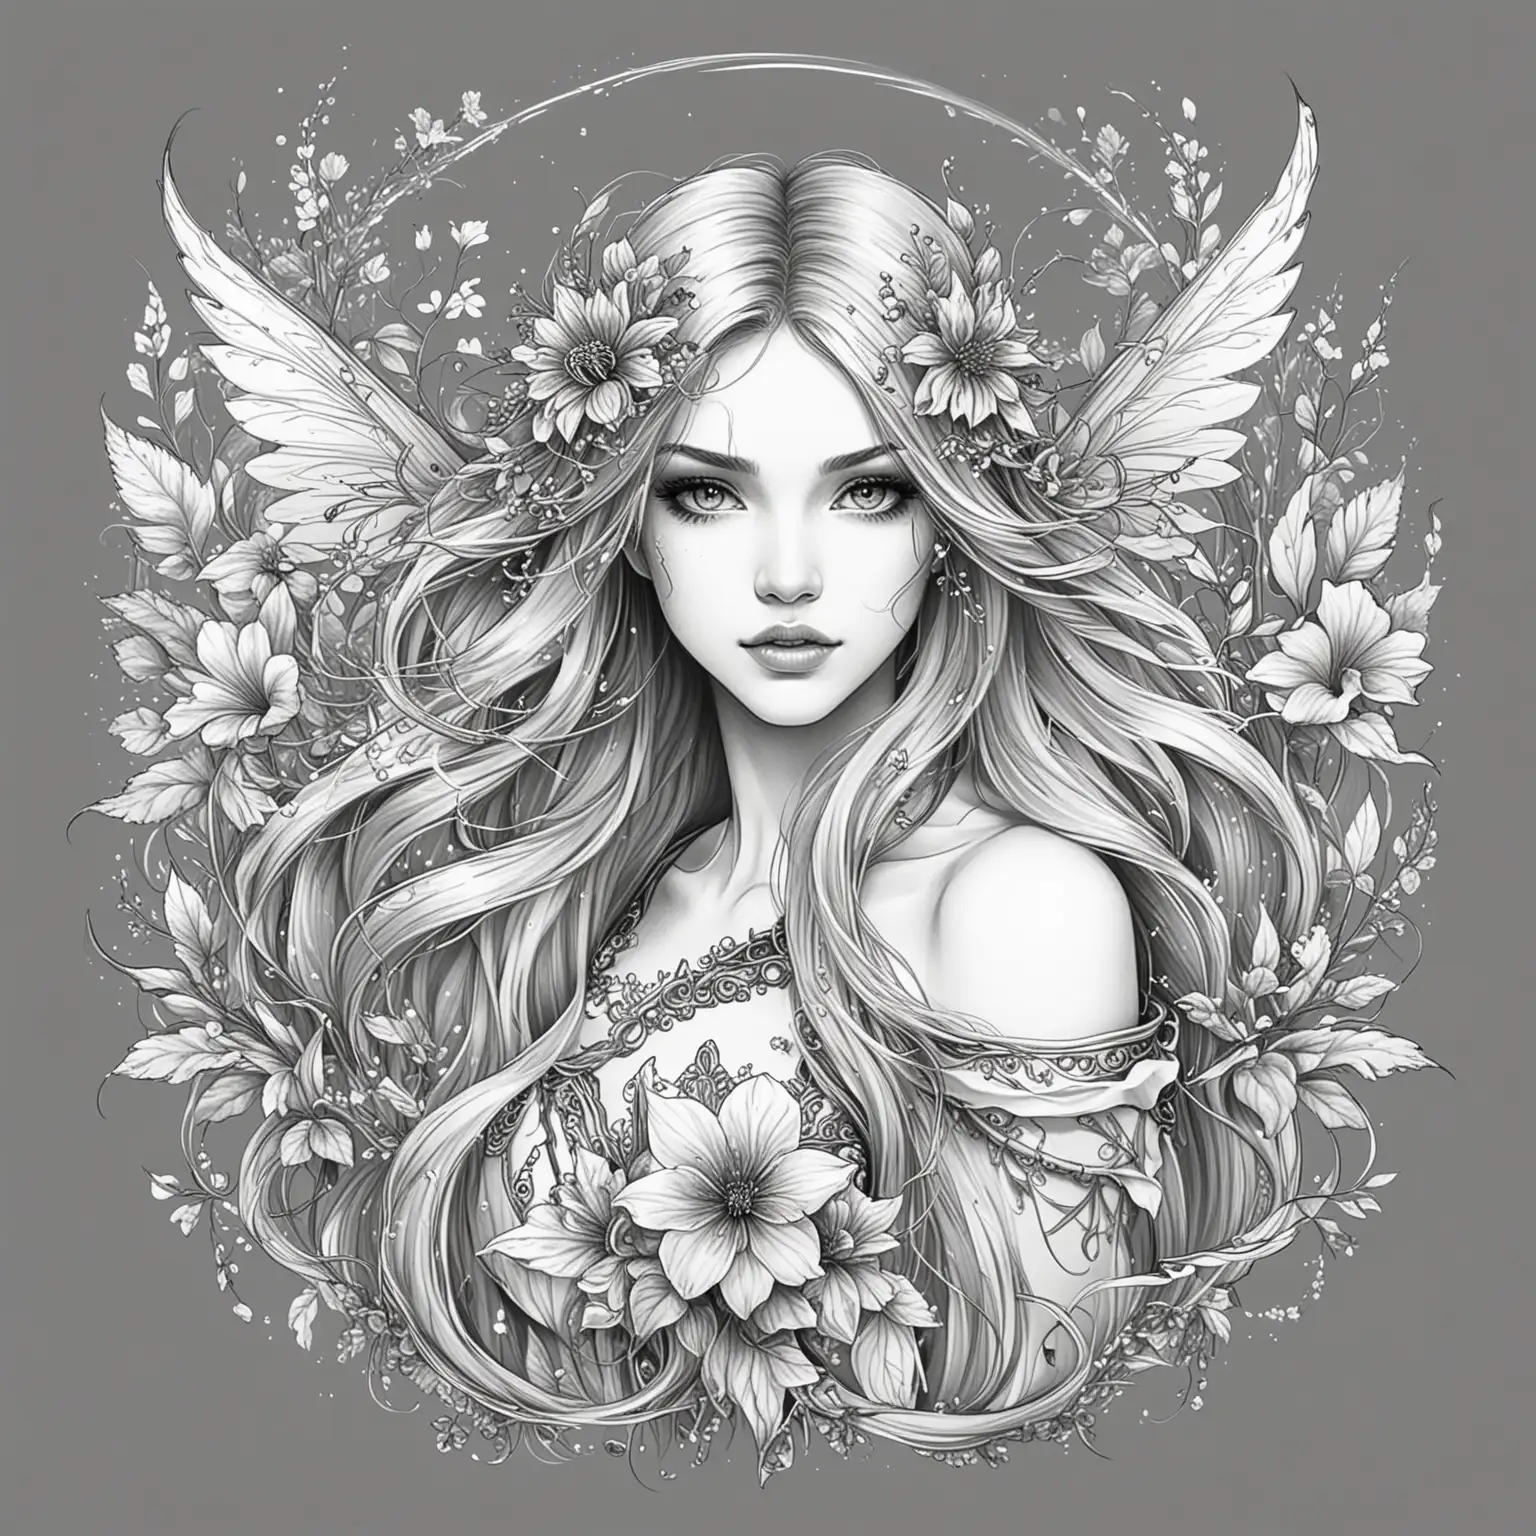 Flower Adorned Fairy Warrior Sketch in Monochrome